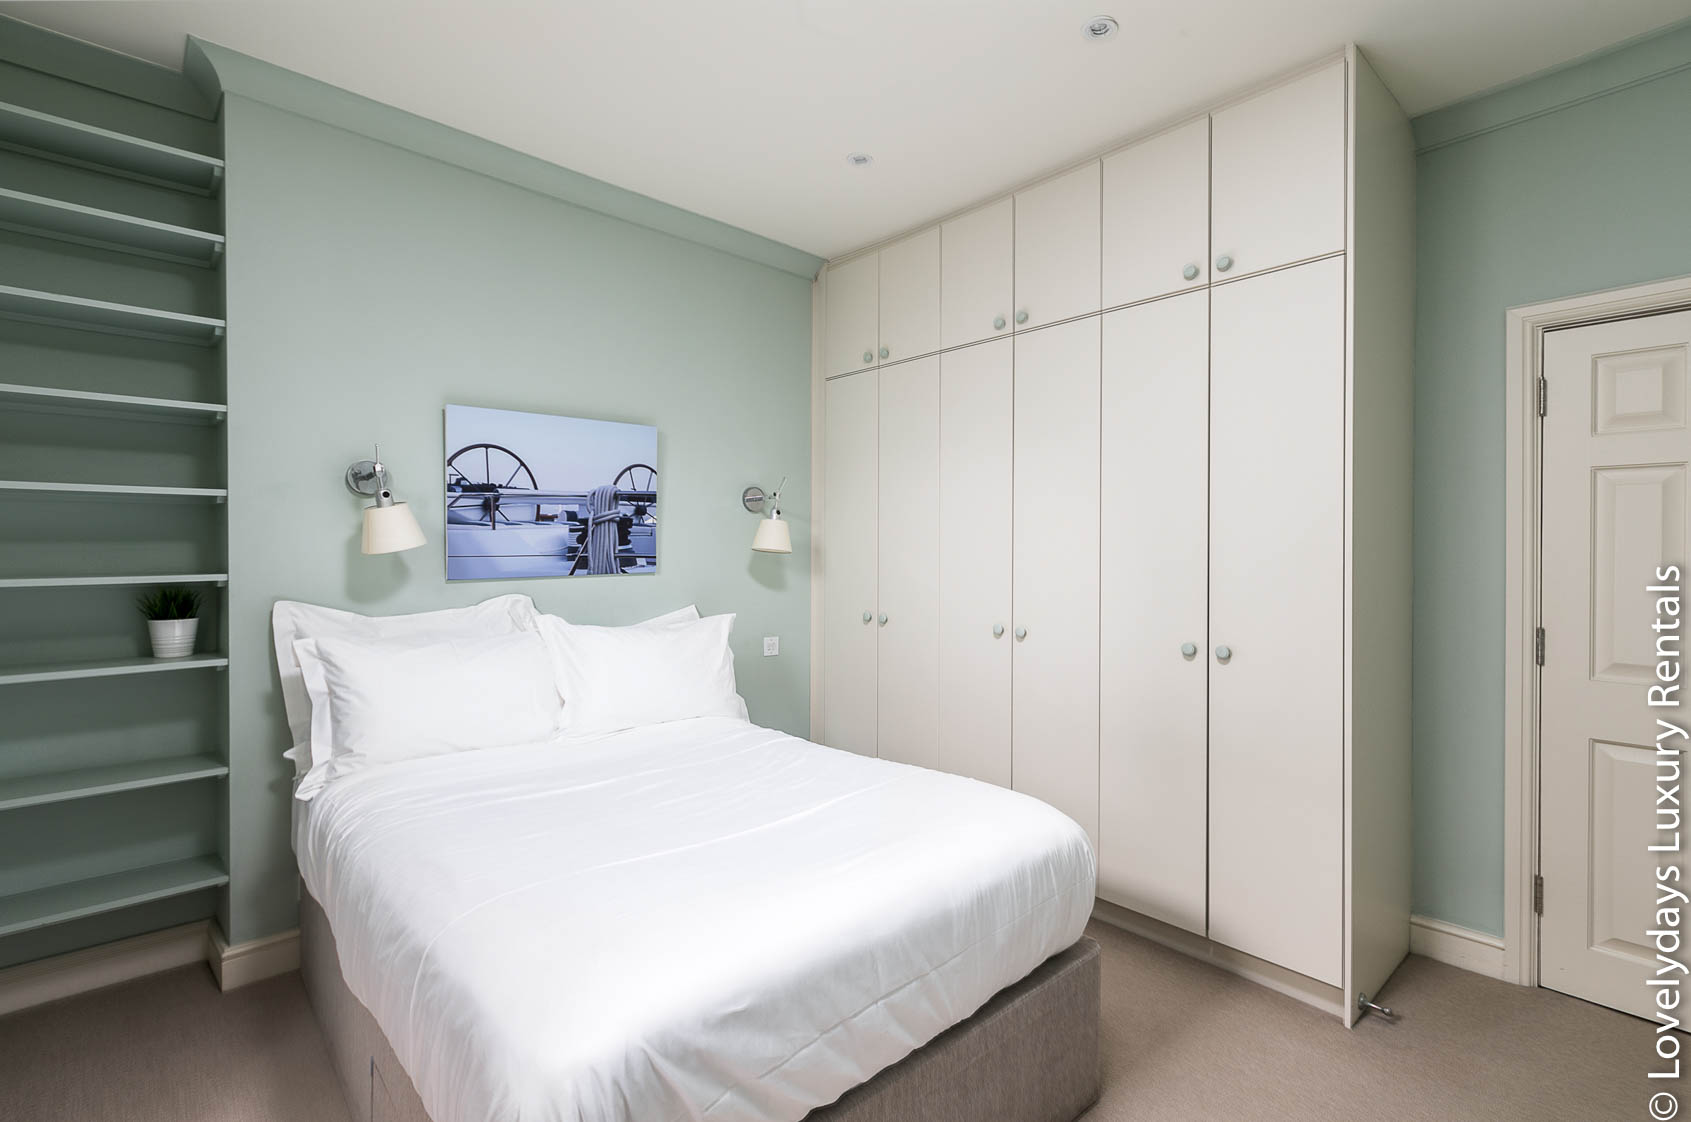 Lovelydays luxury service apartment rental - London - Covent Garden - Neal Street - Lovelysuite - 2 bedrooms - 1 bathrooms - Double bed - 4453b62b7cfb - Lovelydays